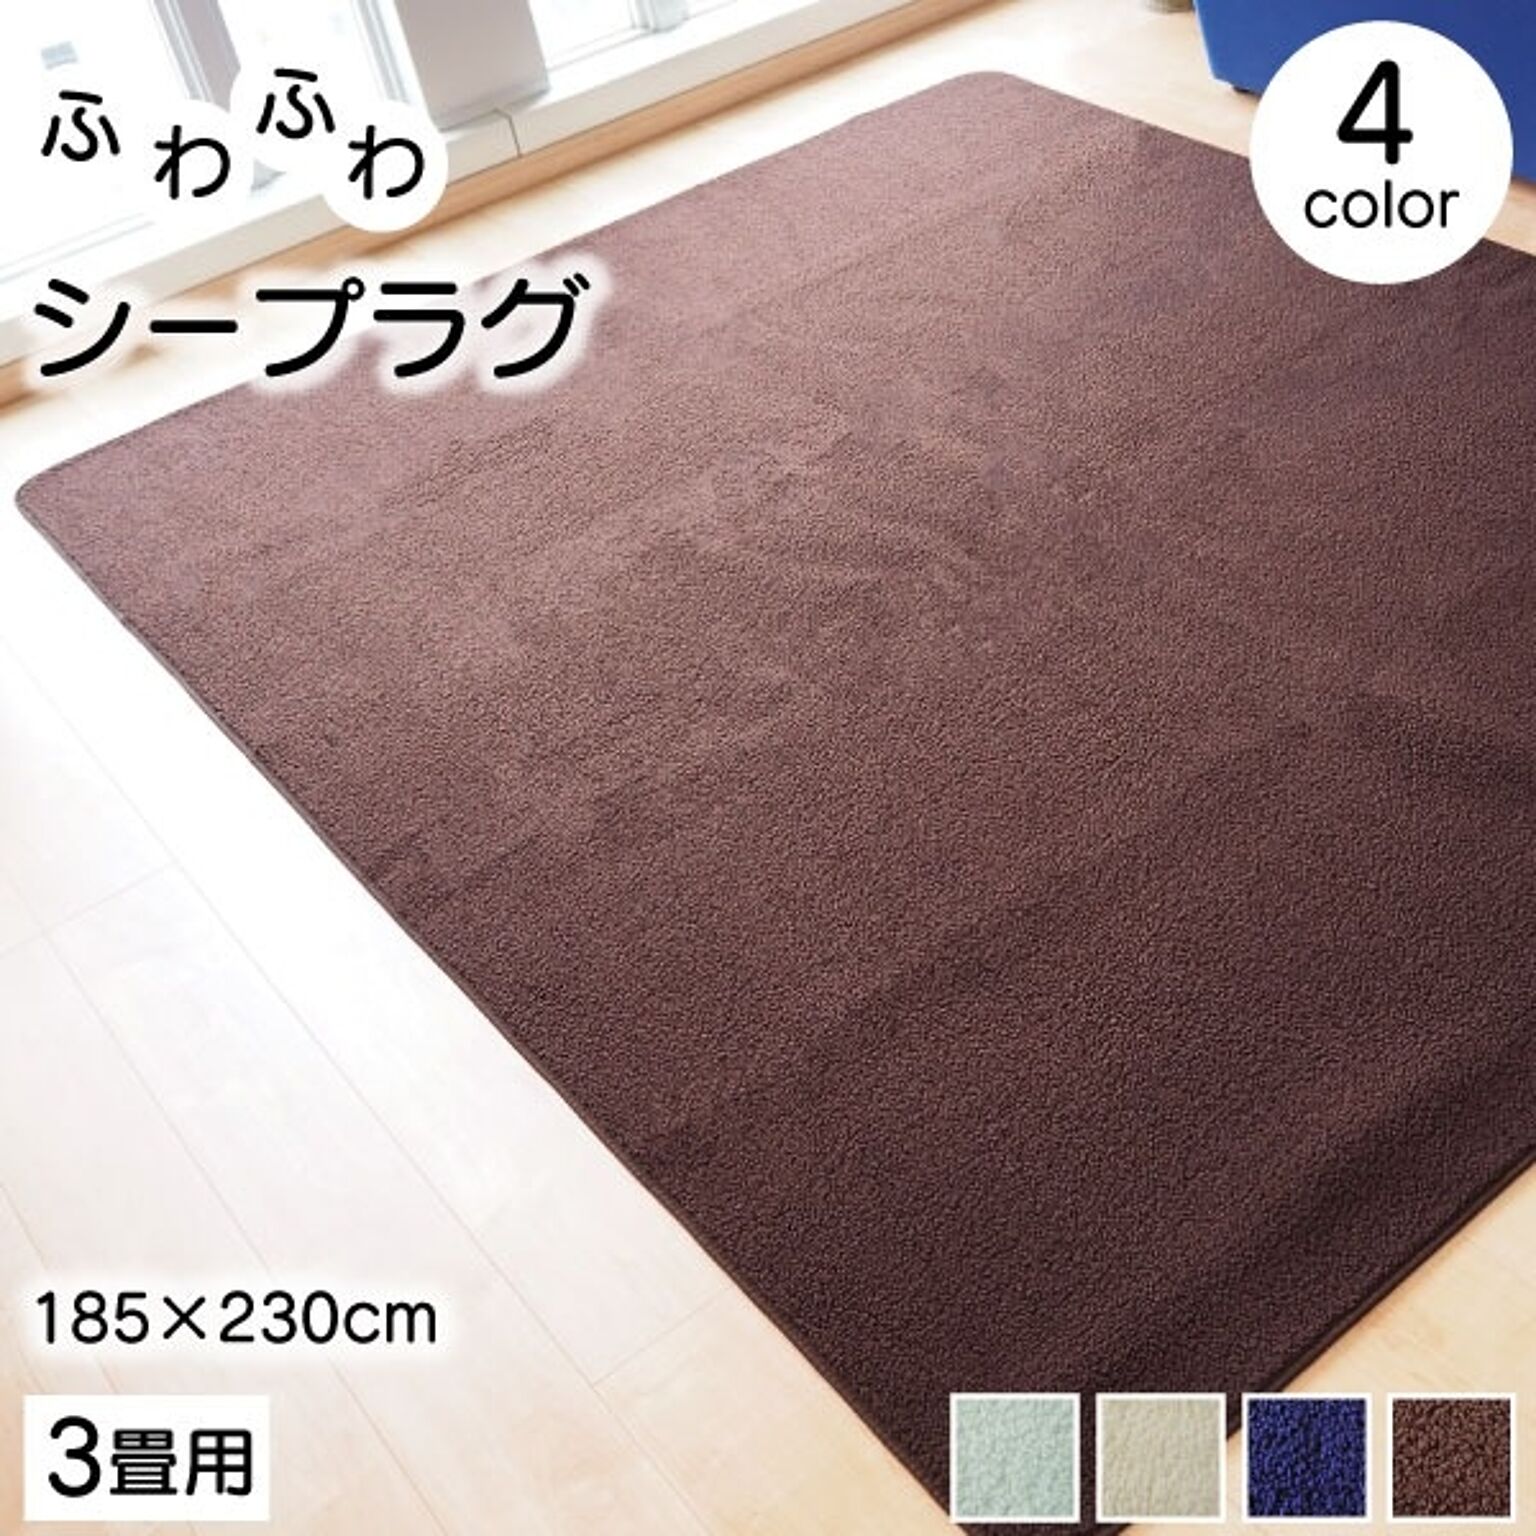 ラグマット 絨毯 約185cm×230cm ブラウン 洗える 軽量 持ち運び簡単 床暖房 ホットカーペット対応 リビング【代引不可】